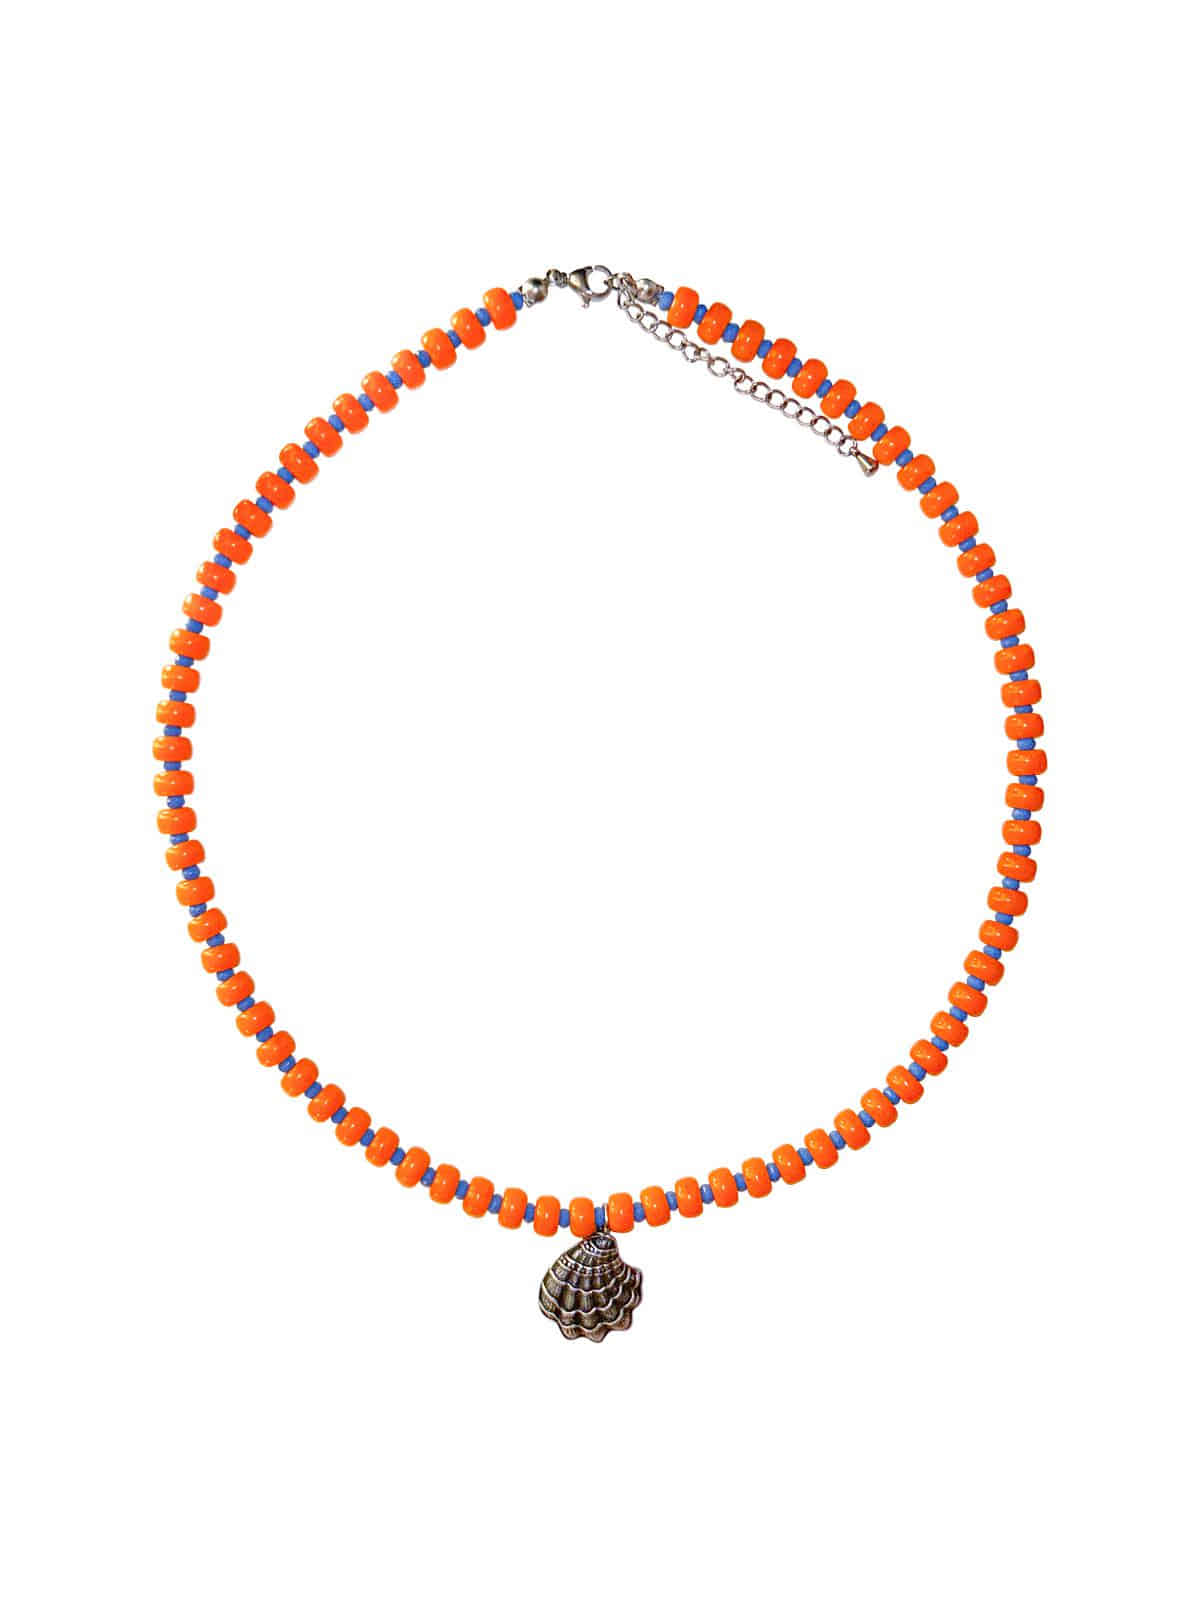 Sunset Orange Necklace